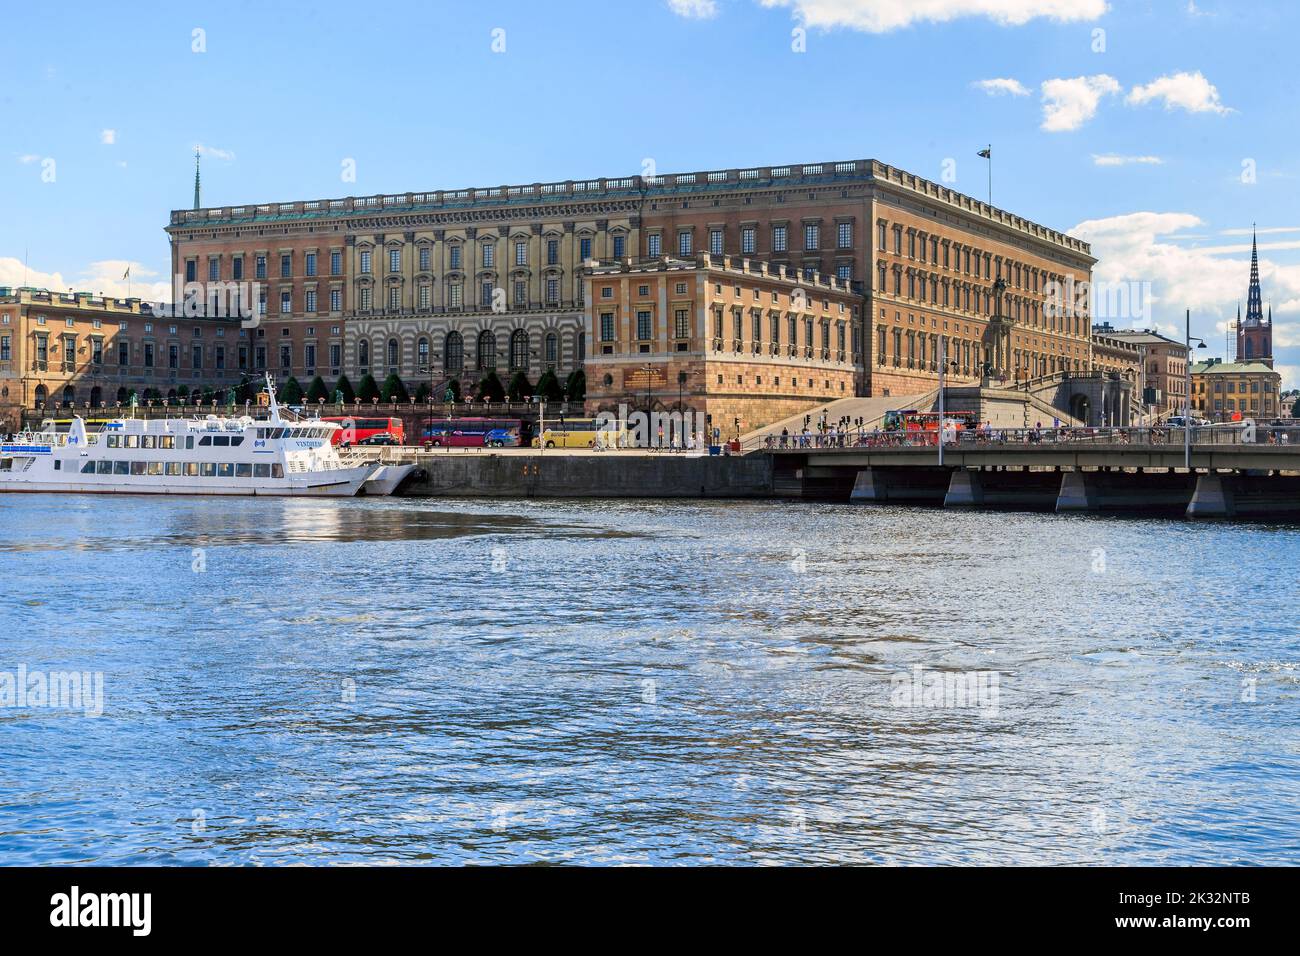 STOCKHOLM, SUÈDE - 27 JUIN 2016: Voici le Palais Royal - la résidence officielle du monarque suédois sur la promenade de l'île Stadholmen. Banque D'Images